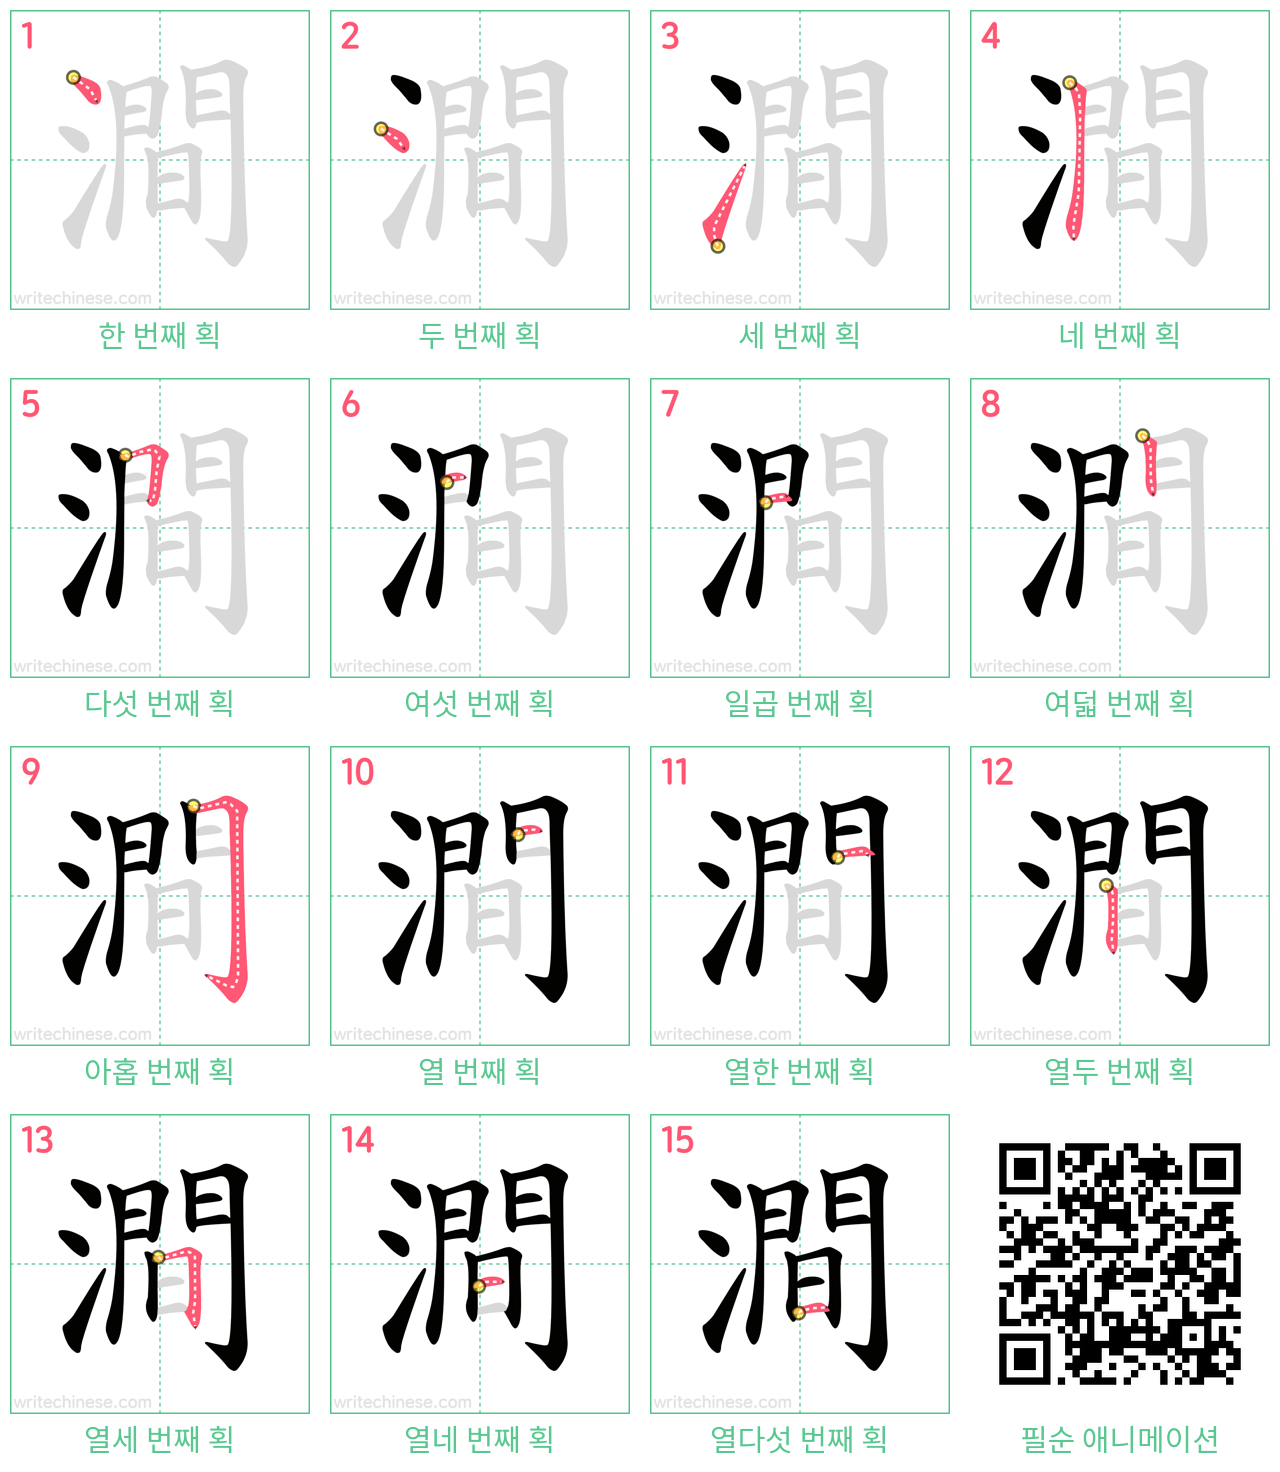 澗 step-by-step stroke order diagrams